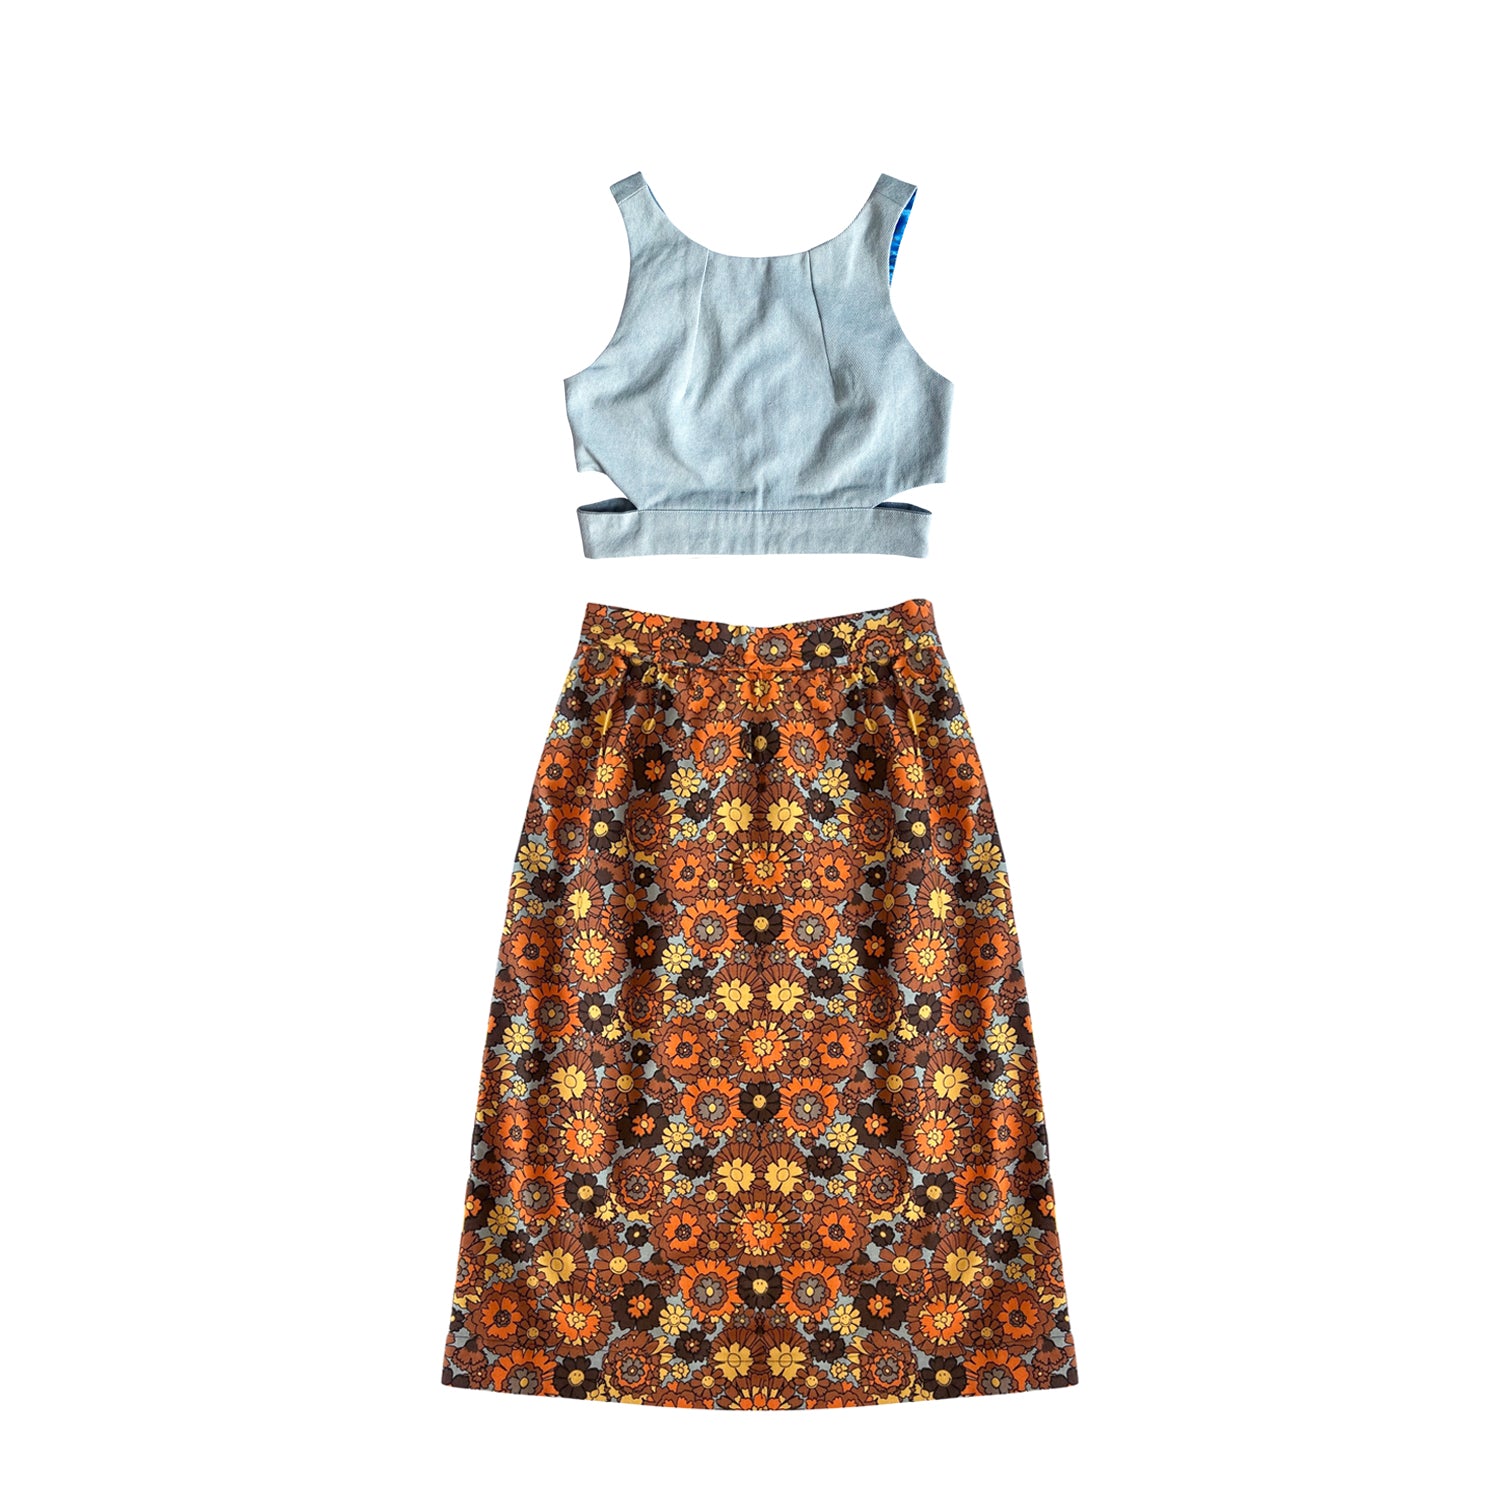 Denim Crop Top & Skirt Set in Blue & Brown